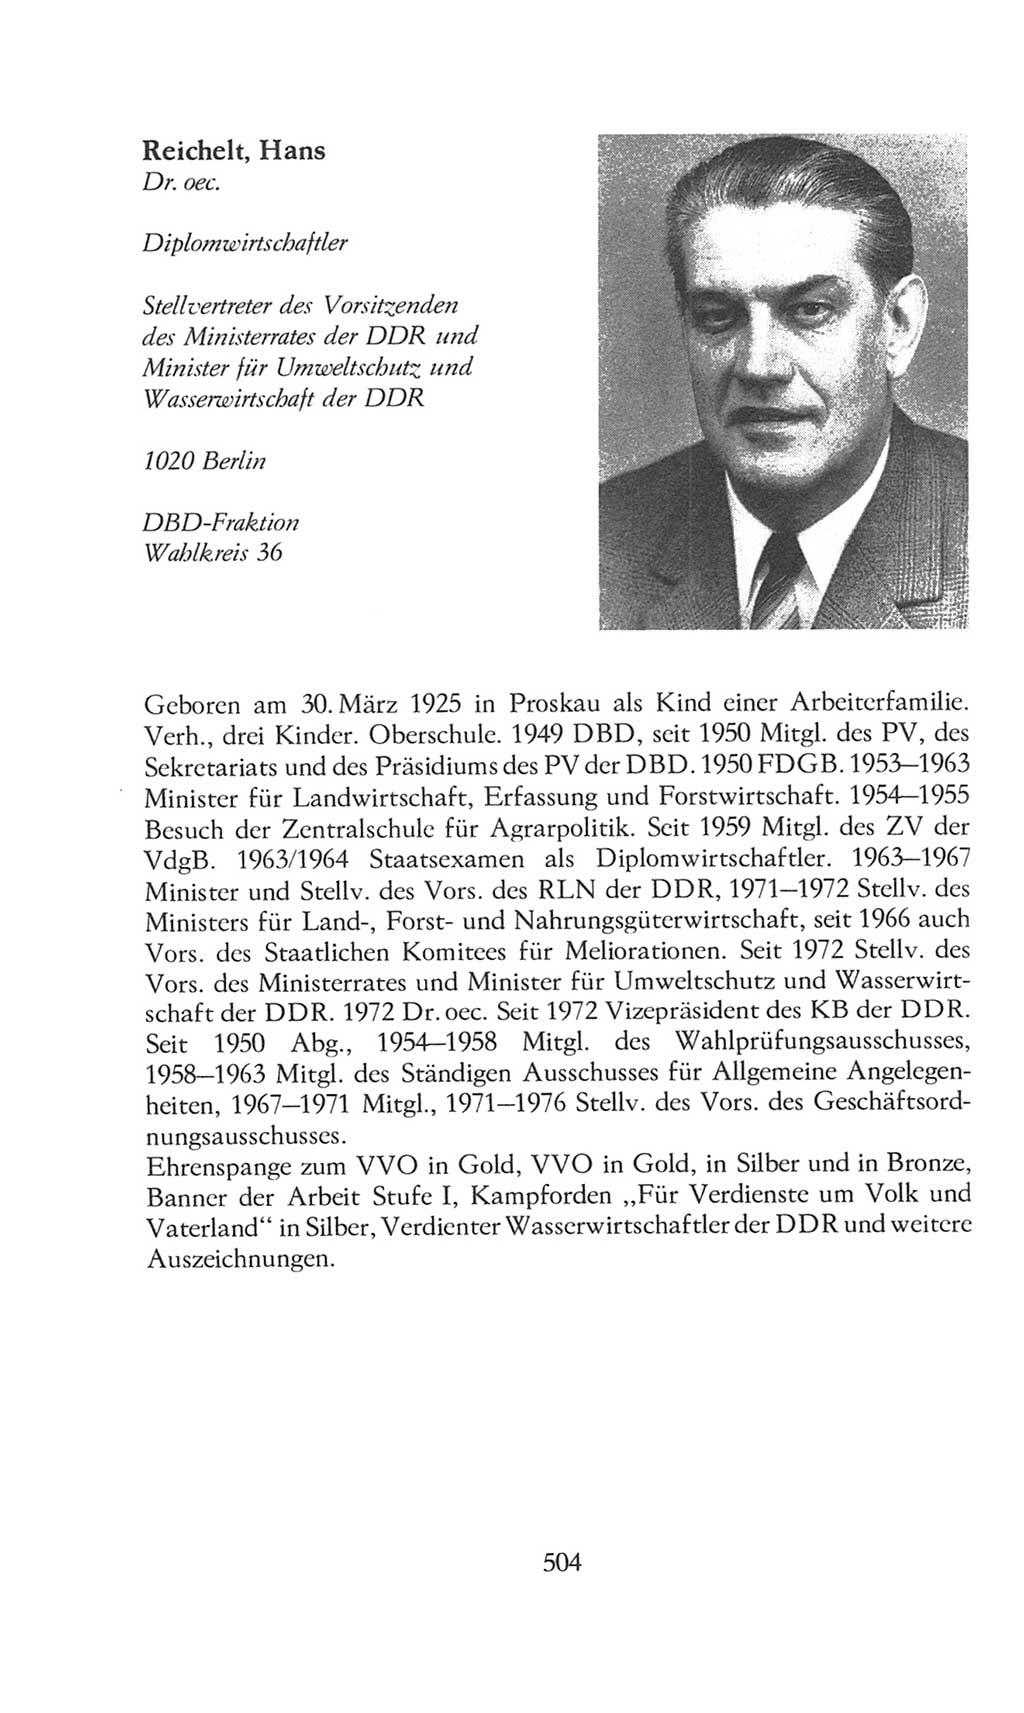 Volkskammer (VK) der Deutschen Demokratischen Republik (DDR), 8. Wahlperiode 1981-1986, Seite 504 (VK. DDR 8. WP. 1981-1986, S. 504)